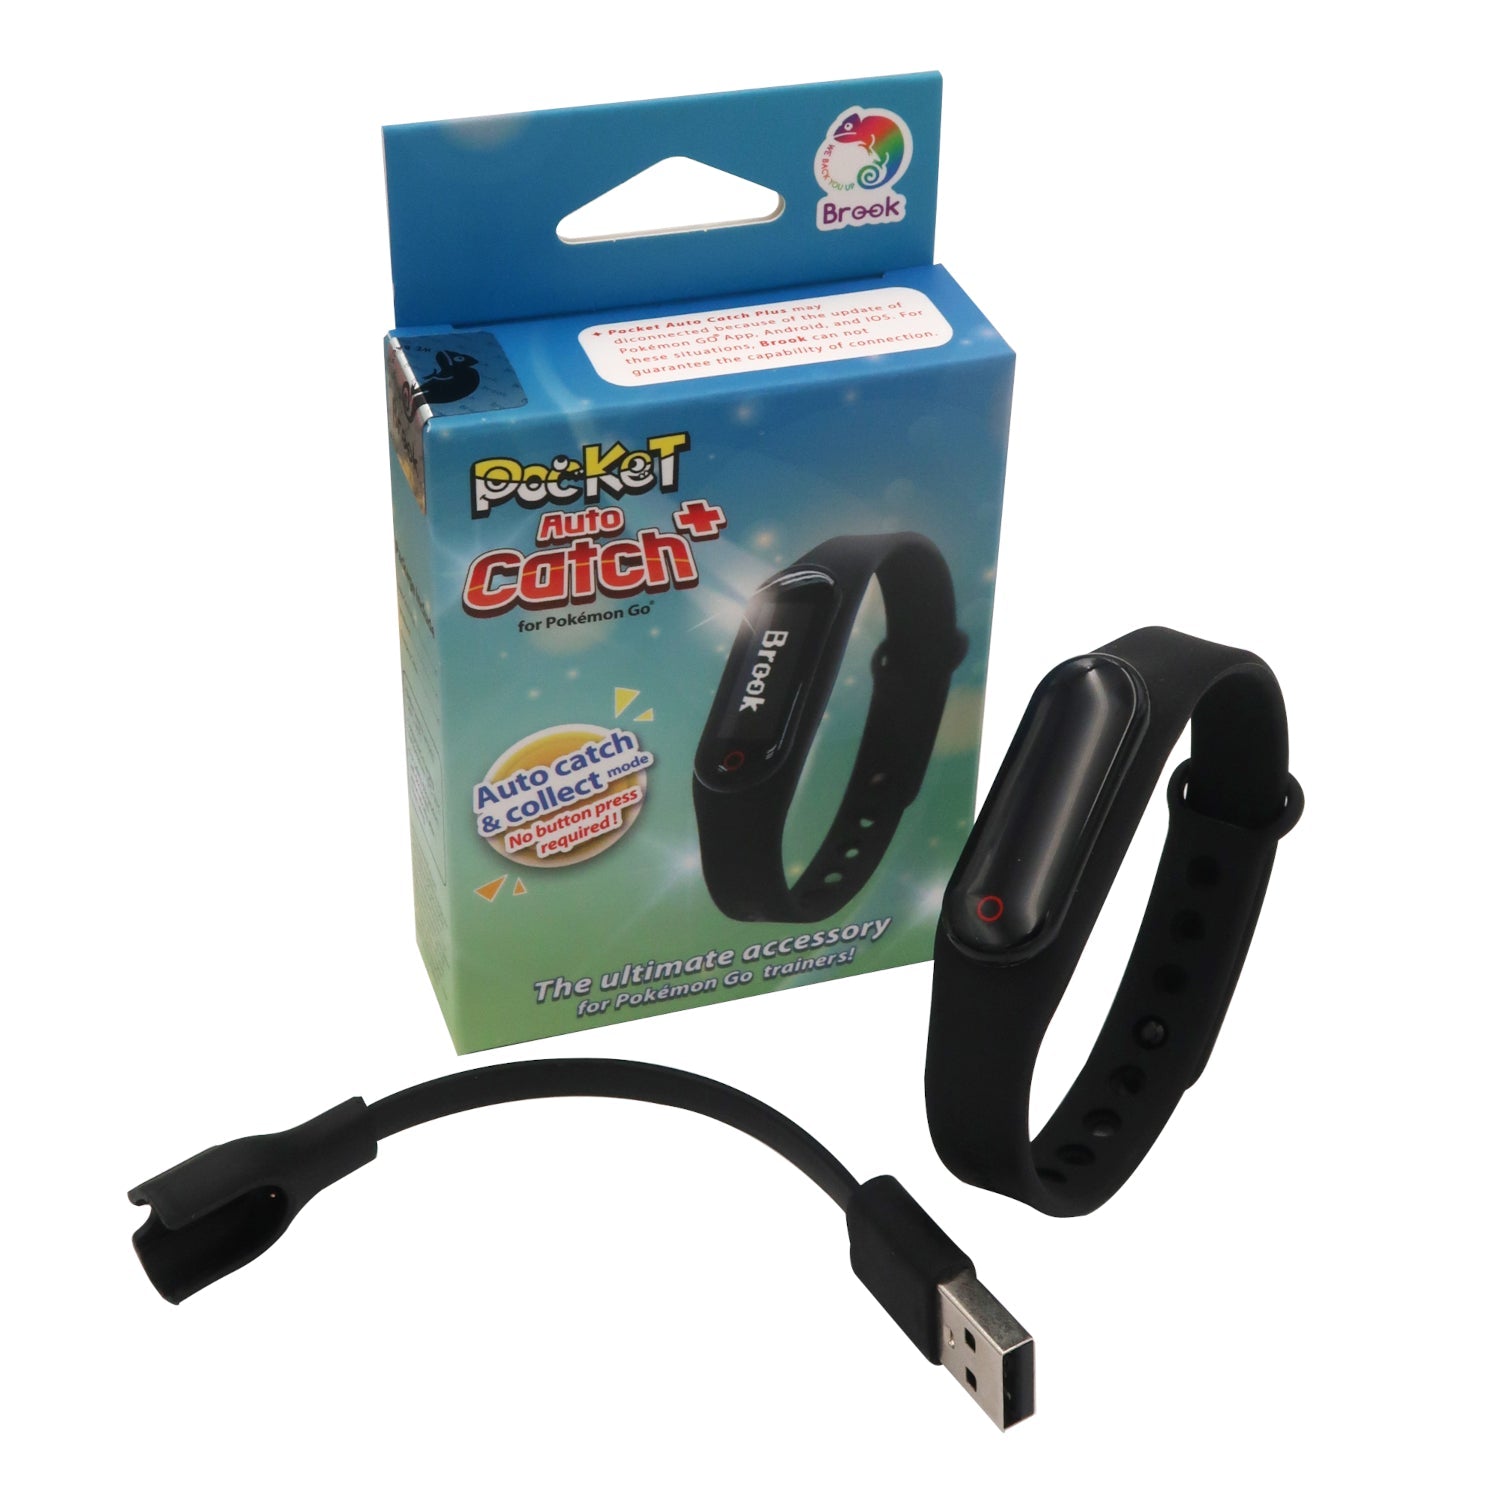 Gaming-Brook Pocket Auto Catch Plus Wristband (EFM0010077)